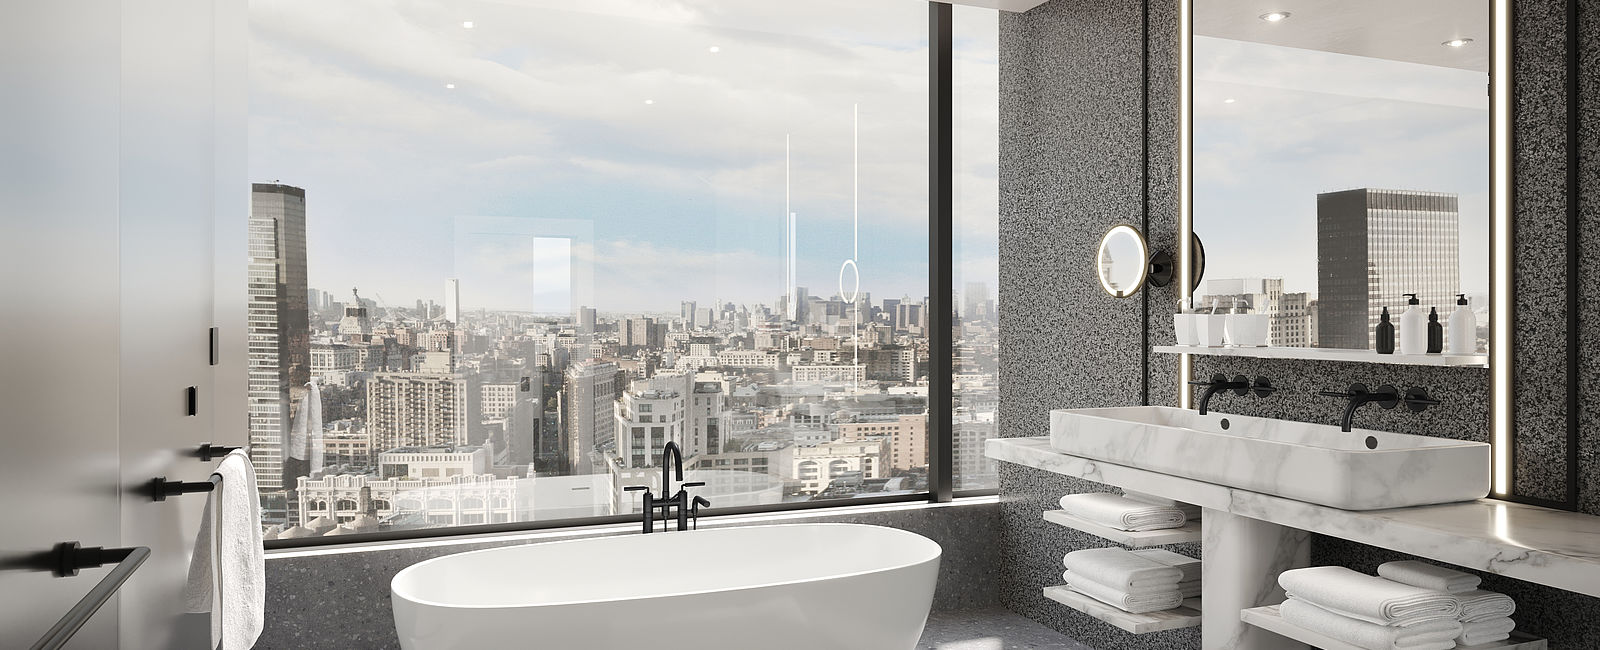 HOTEL ANGEBOTE
 The Ritz-Carlton New York, NoMAd: Gratis Upgrade und mehr 
